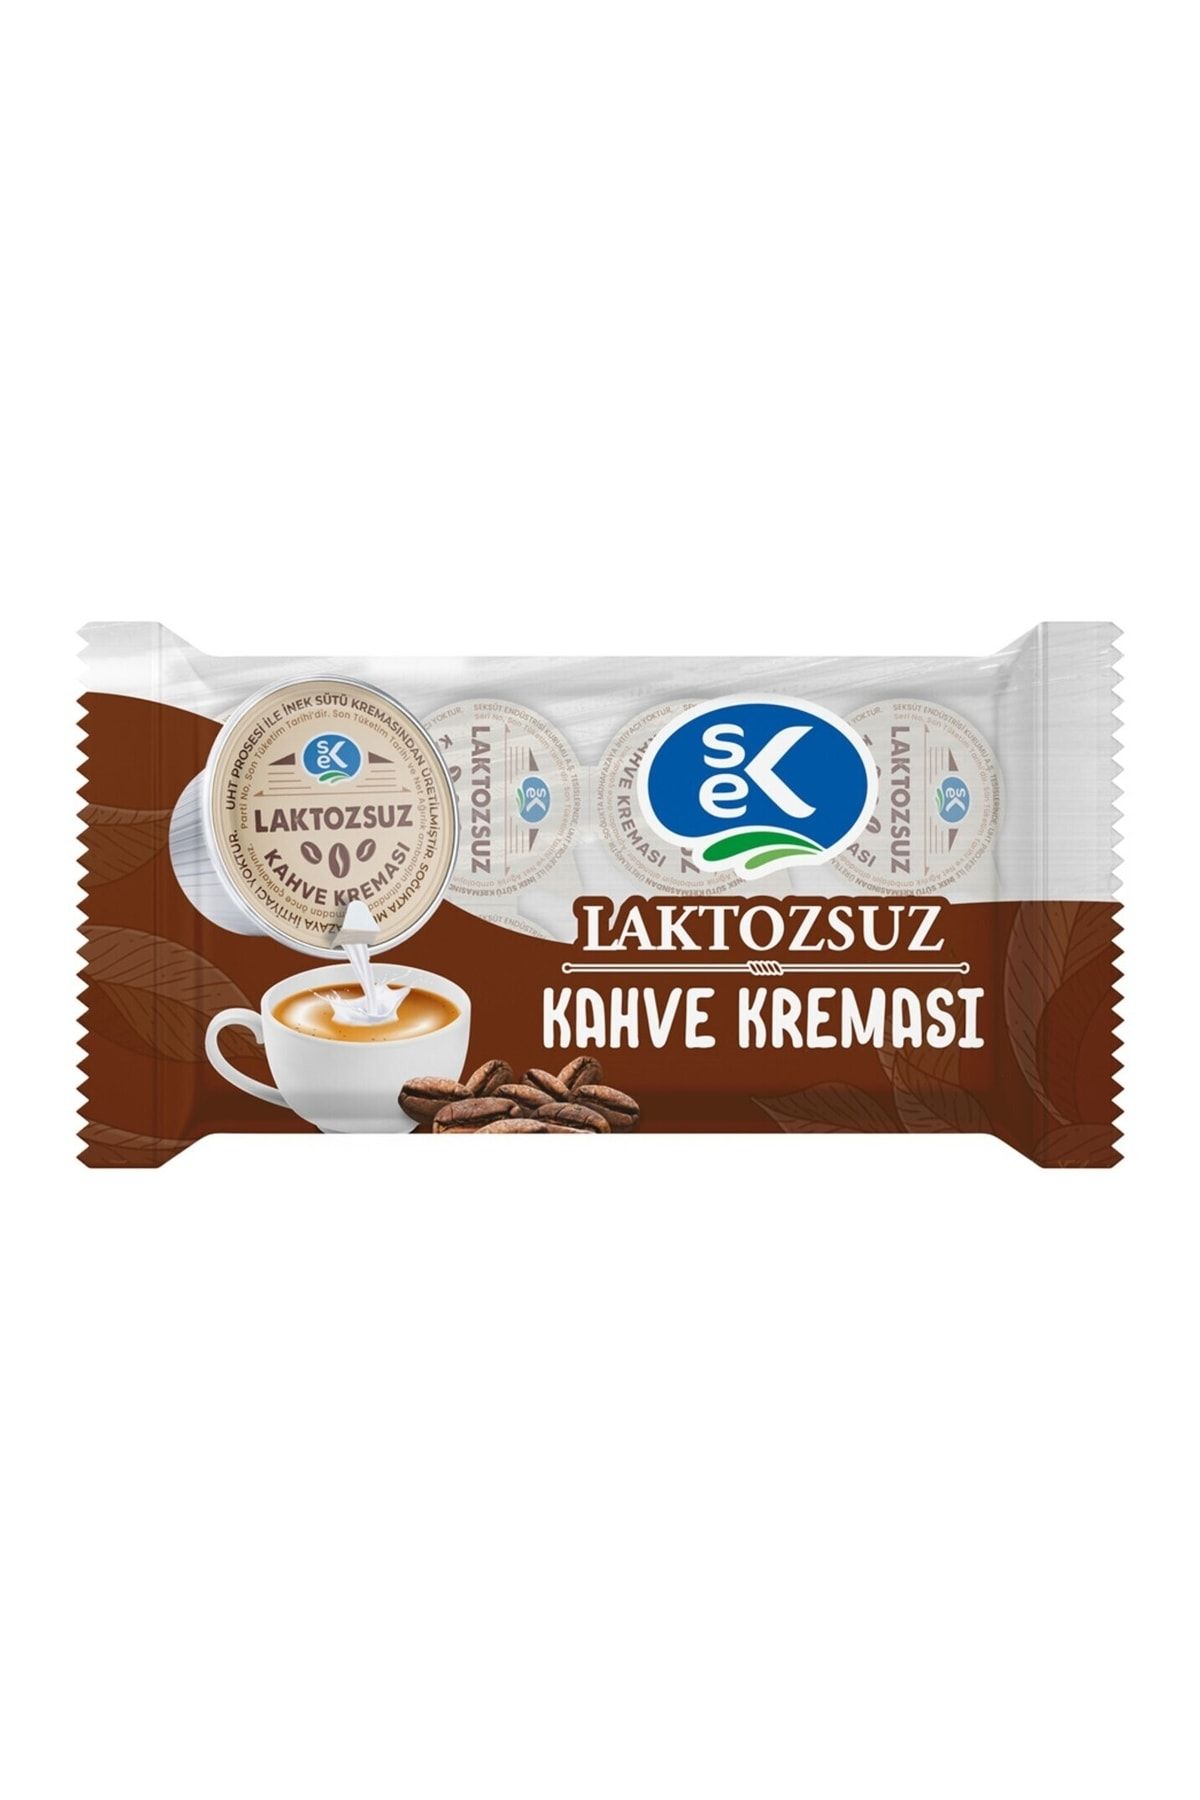 Sek Laktozsuz Kapsül Kahve Kreması 10 Adet X 15 ml (Gerçek Süt Kreması)